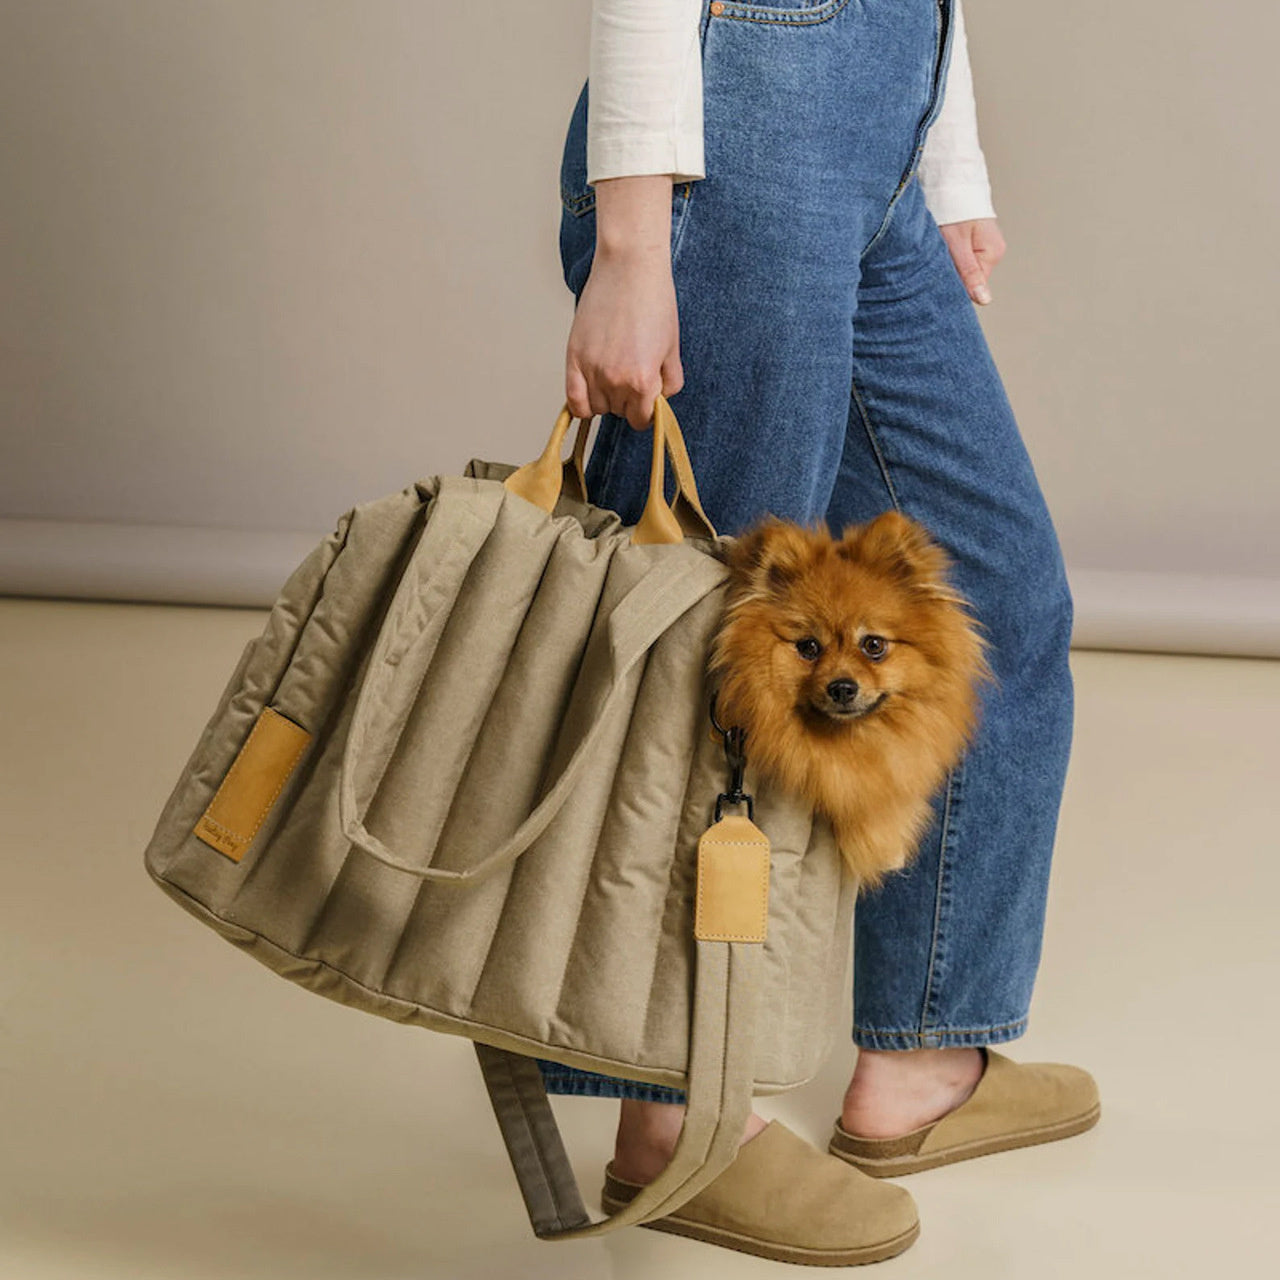 Dog Bag Carrier